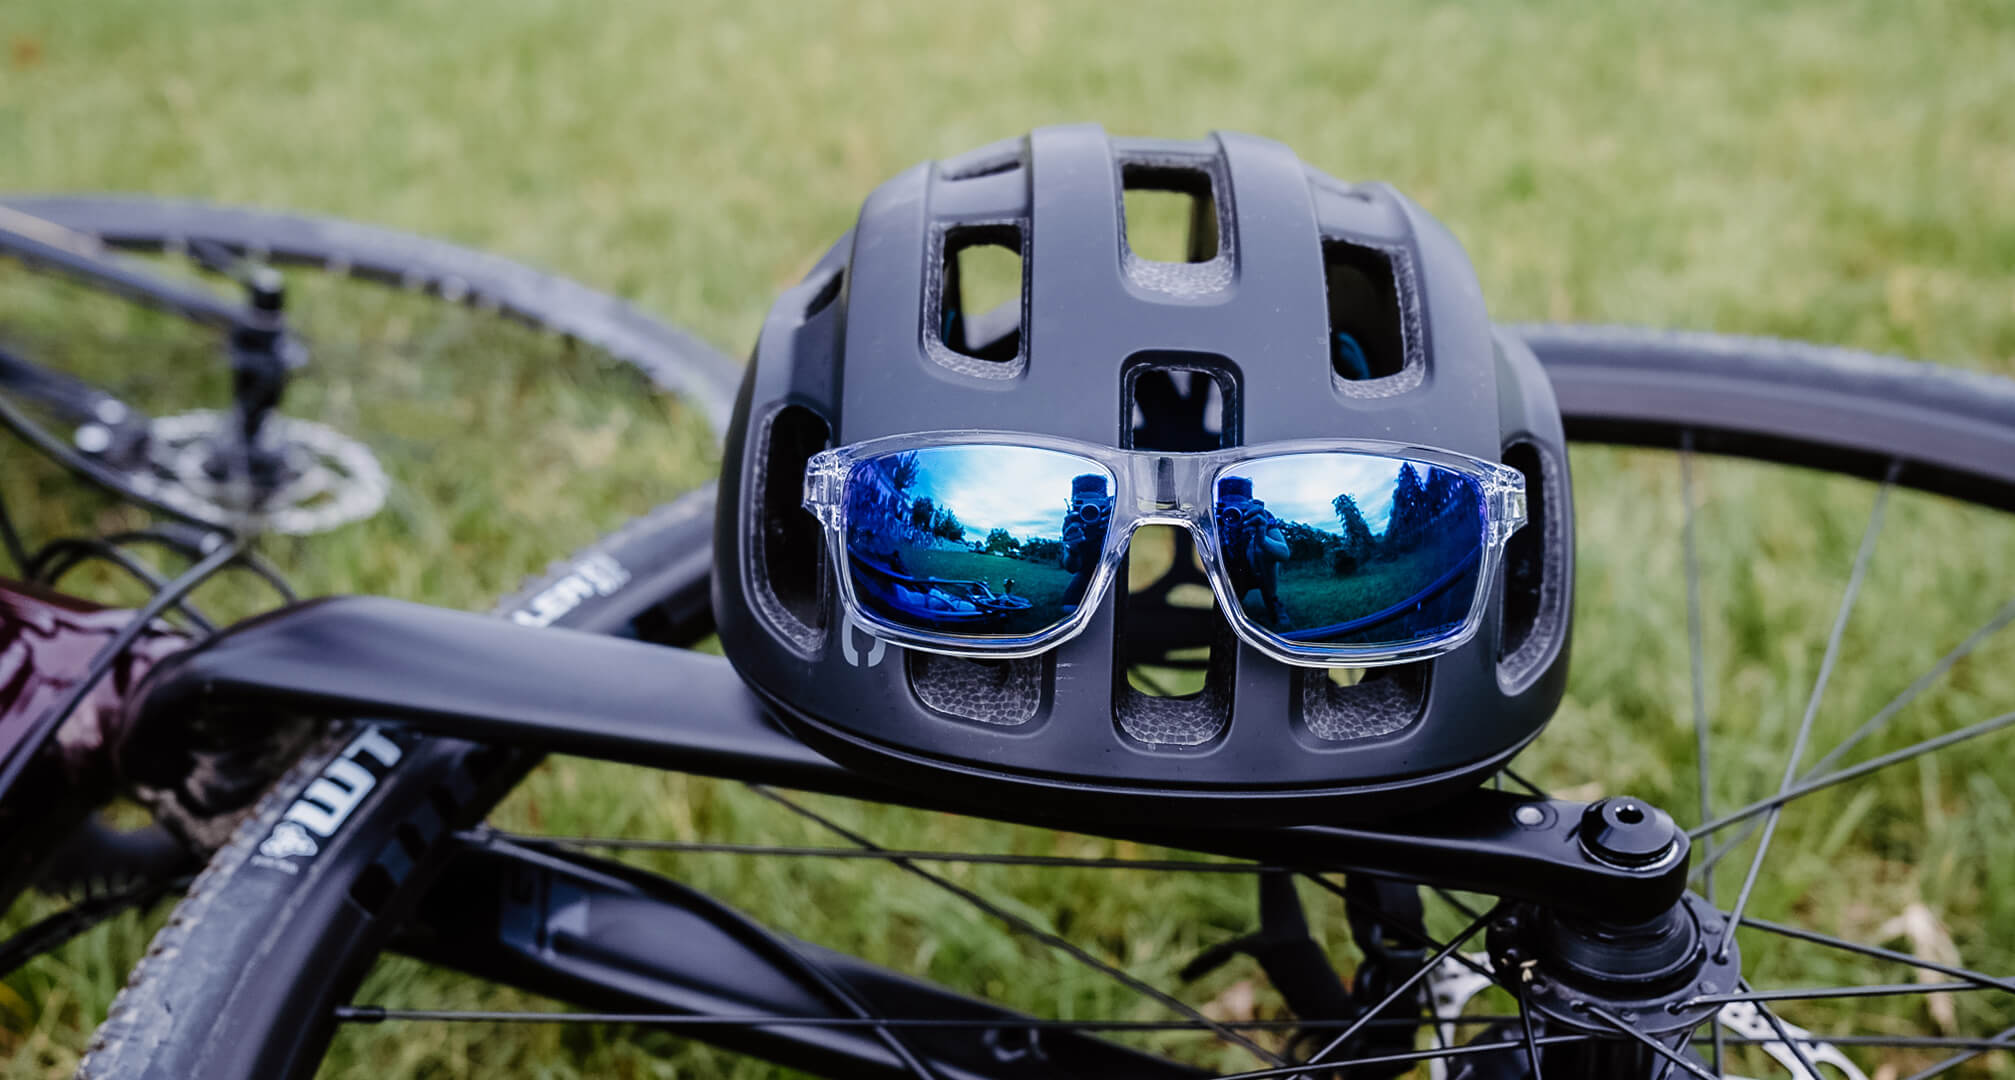 modré zrkadlové slnečné okuliare na cyklistickej prilbe s bicyklom